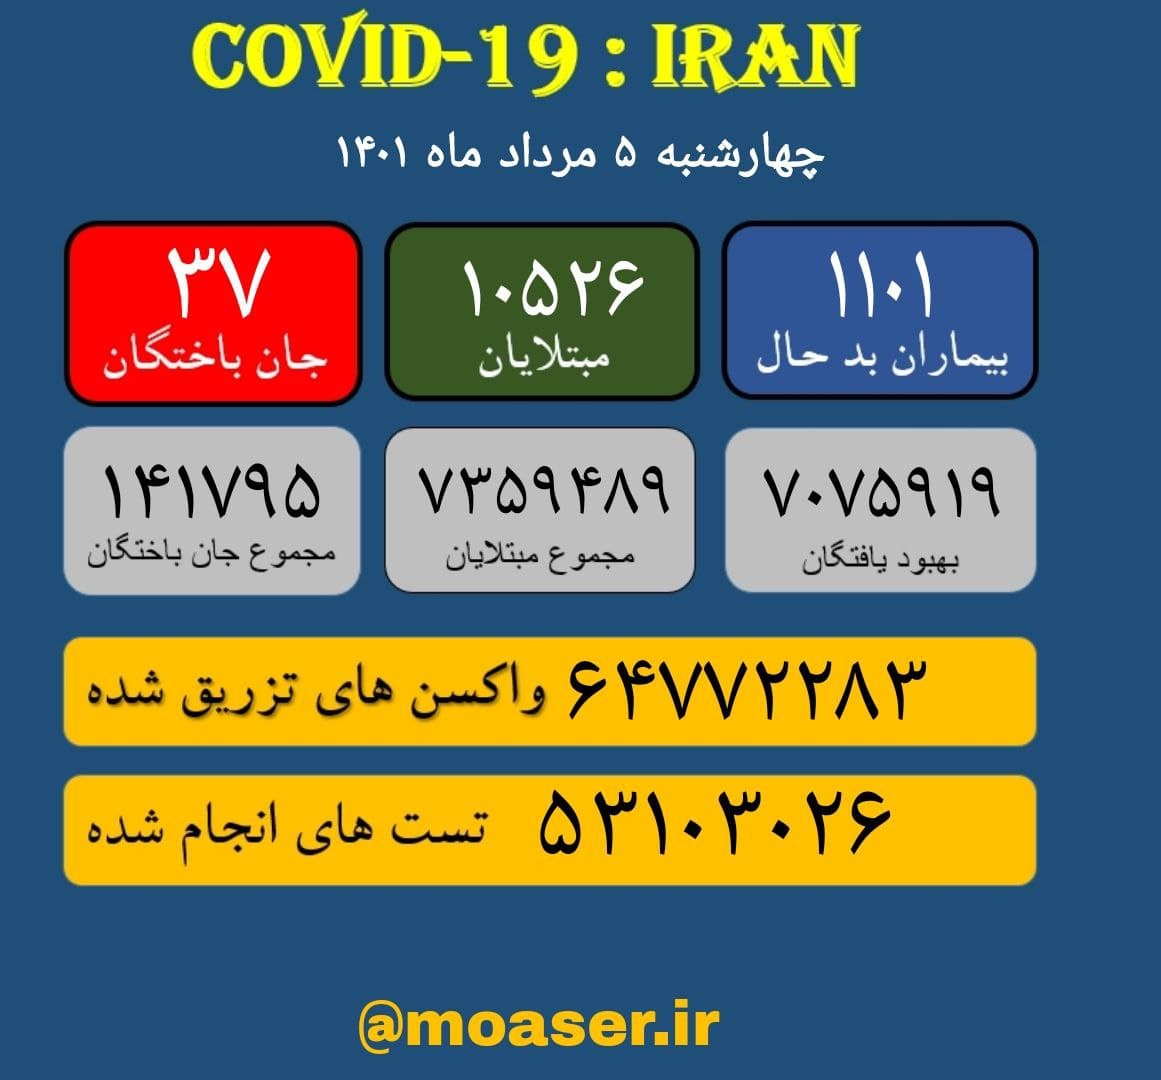 اینفوگرافیک/آمار کرونا در ایران